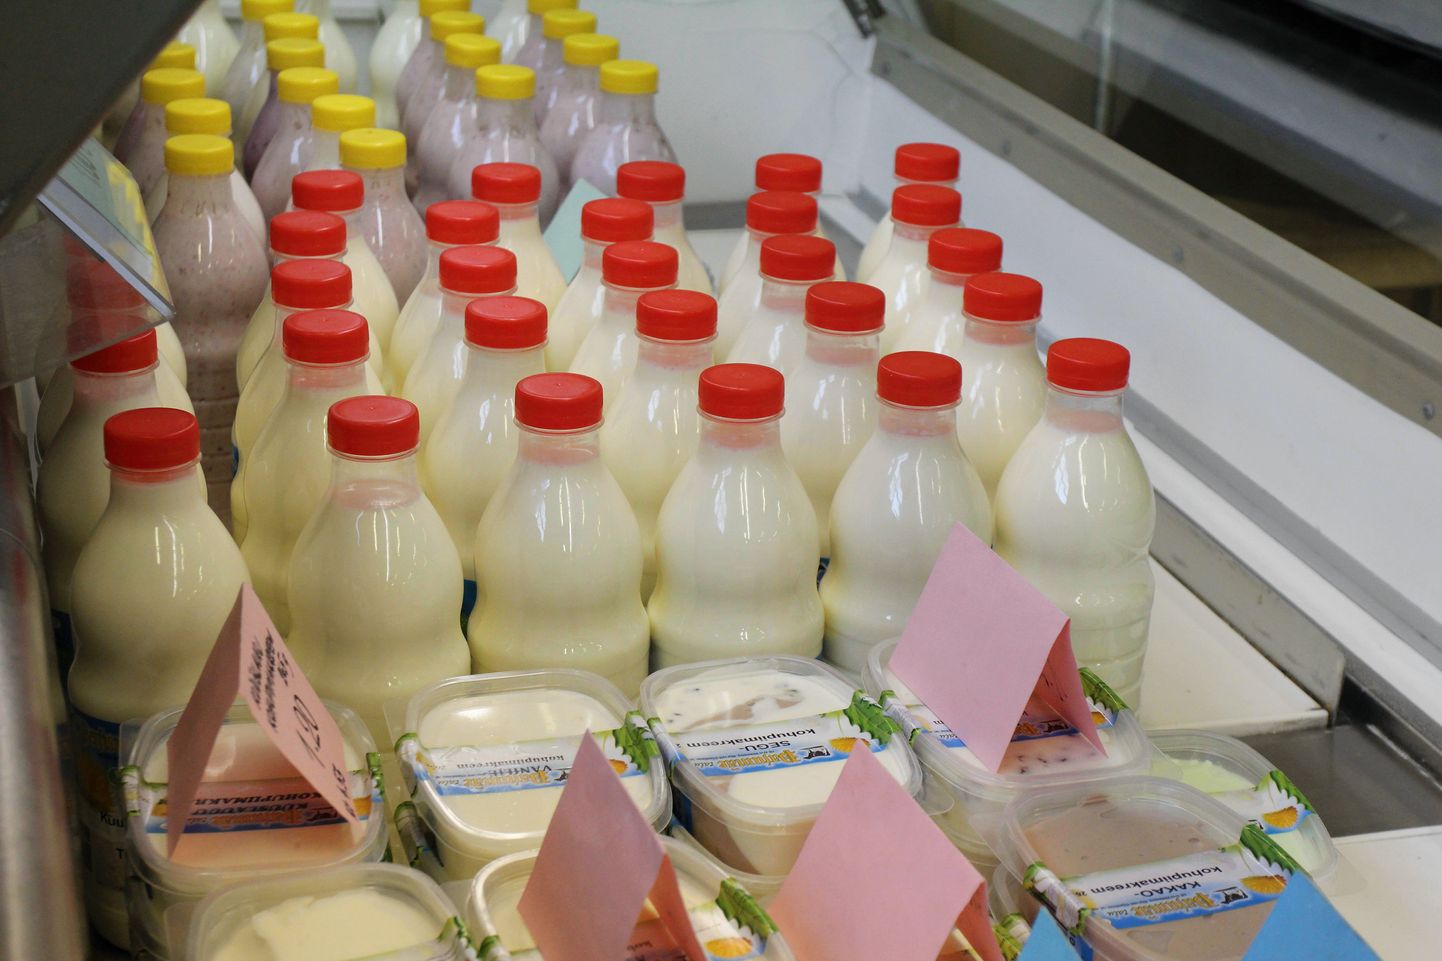 Kodumaistest toodetest eelistab tarbija kindlasti piimatooteid.